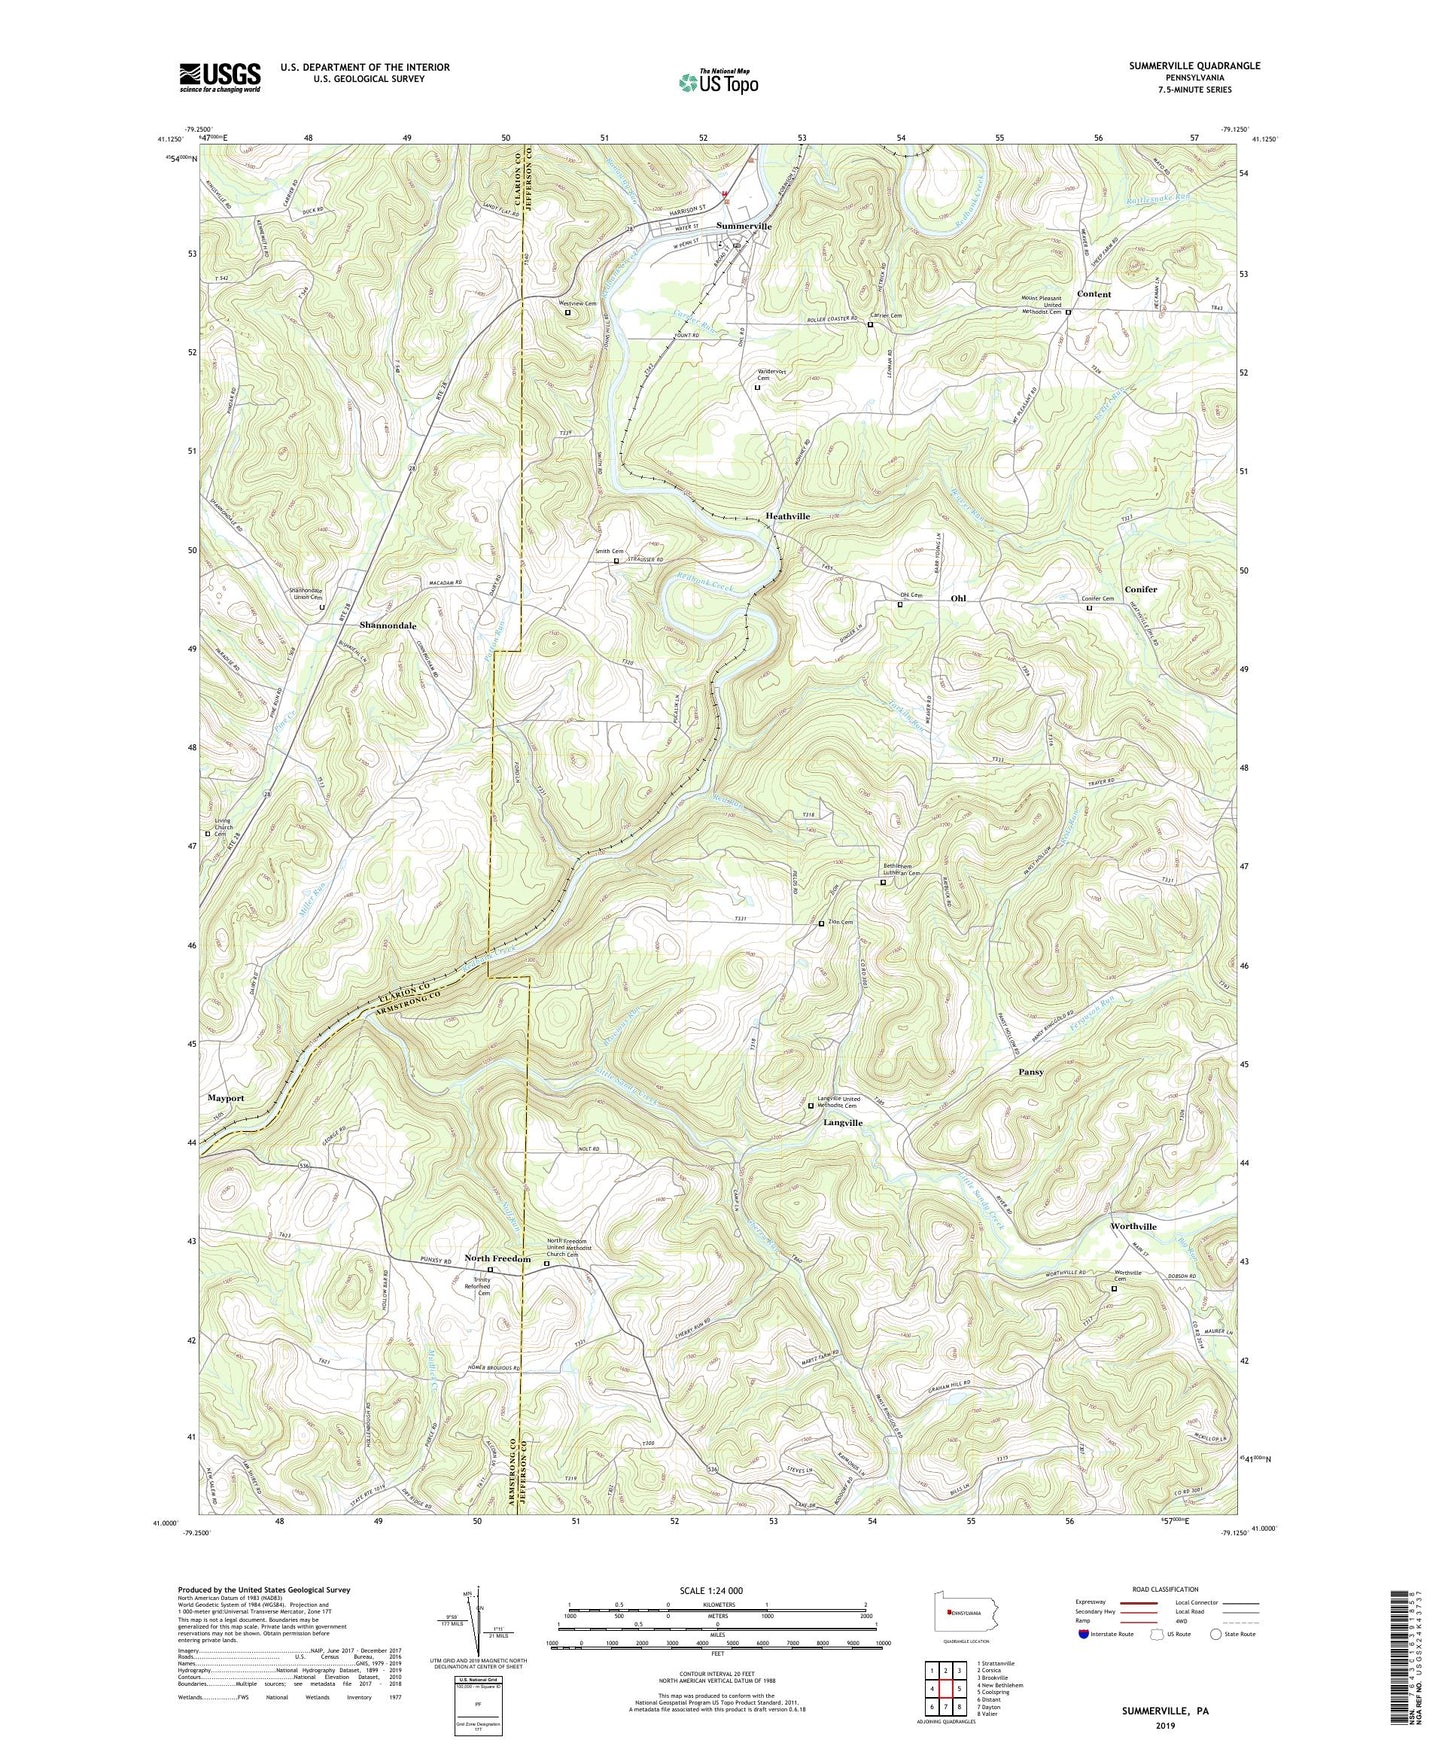 Summerville Pennsylvania US Topo Map Image